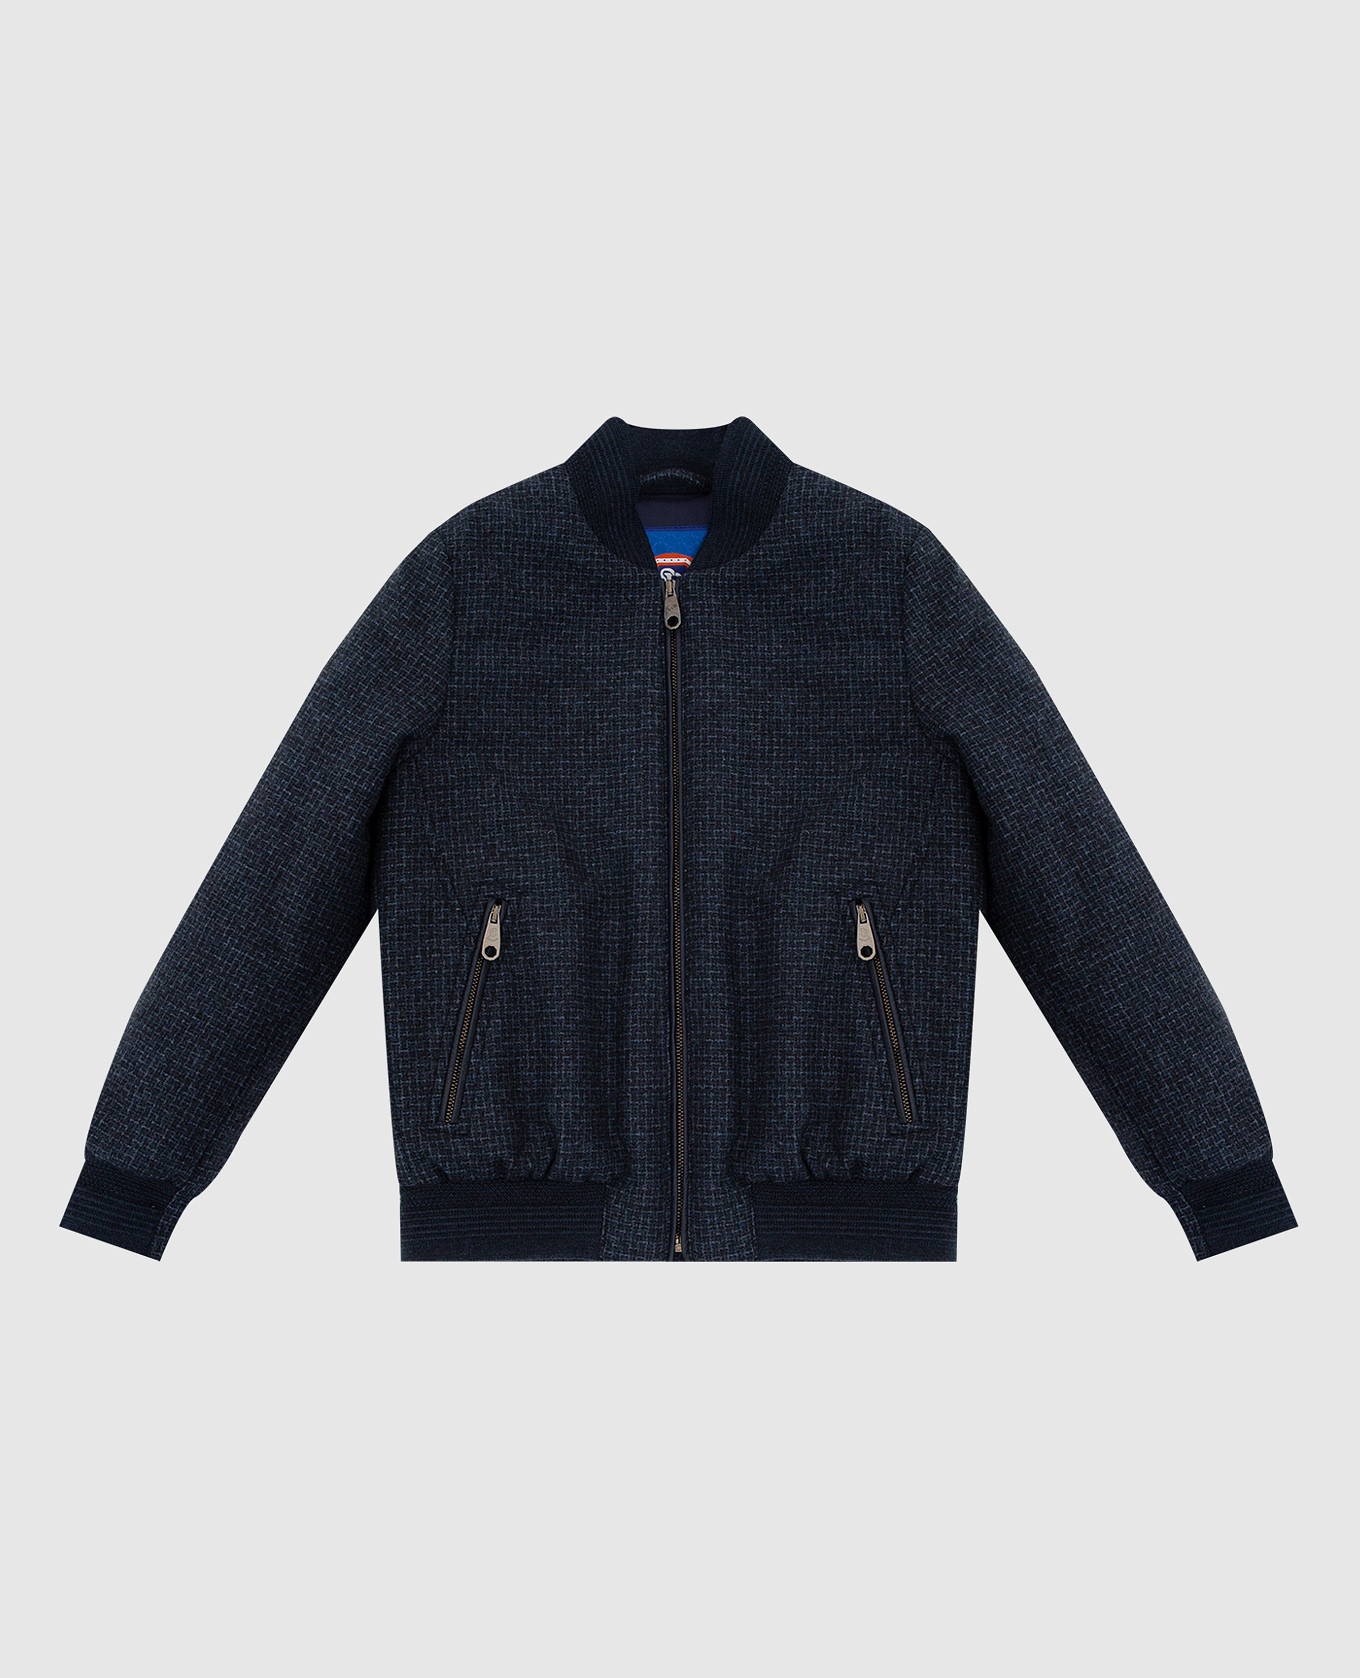 Children's dark blue wool bomber jacket